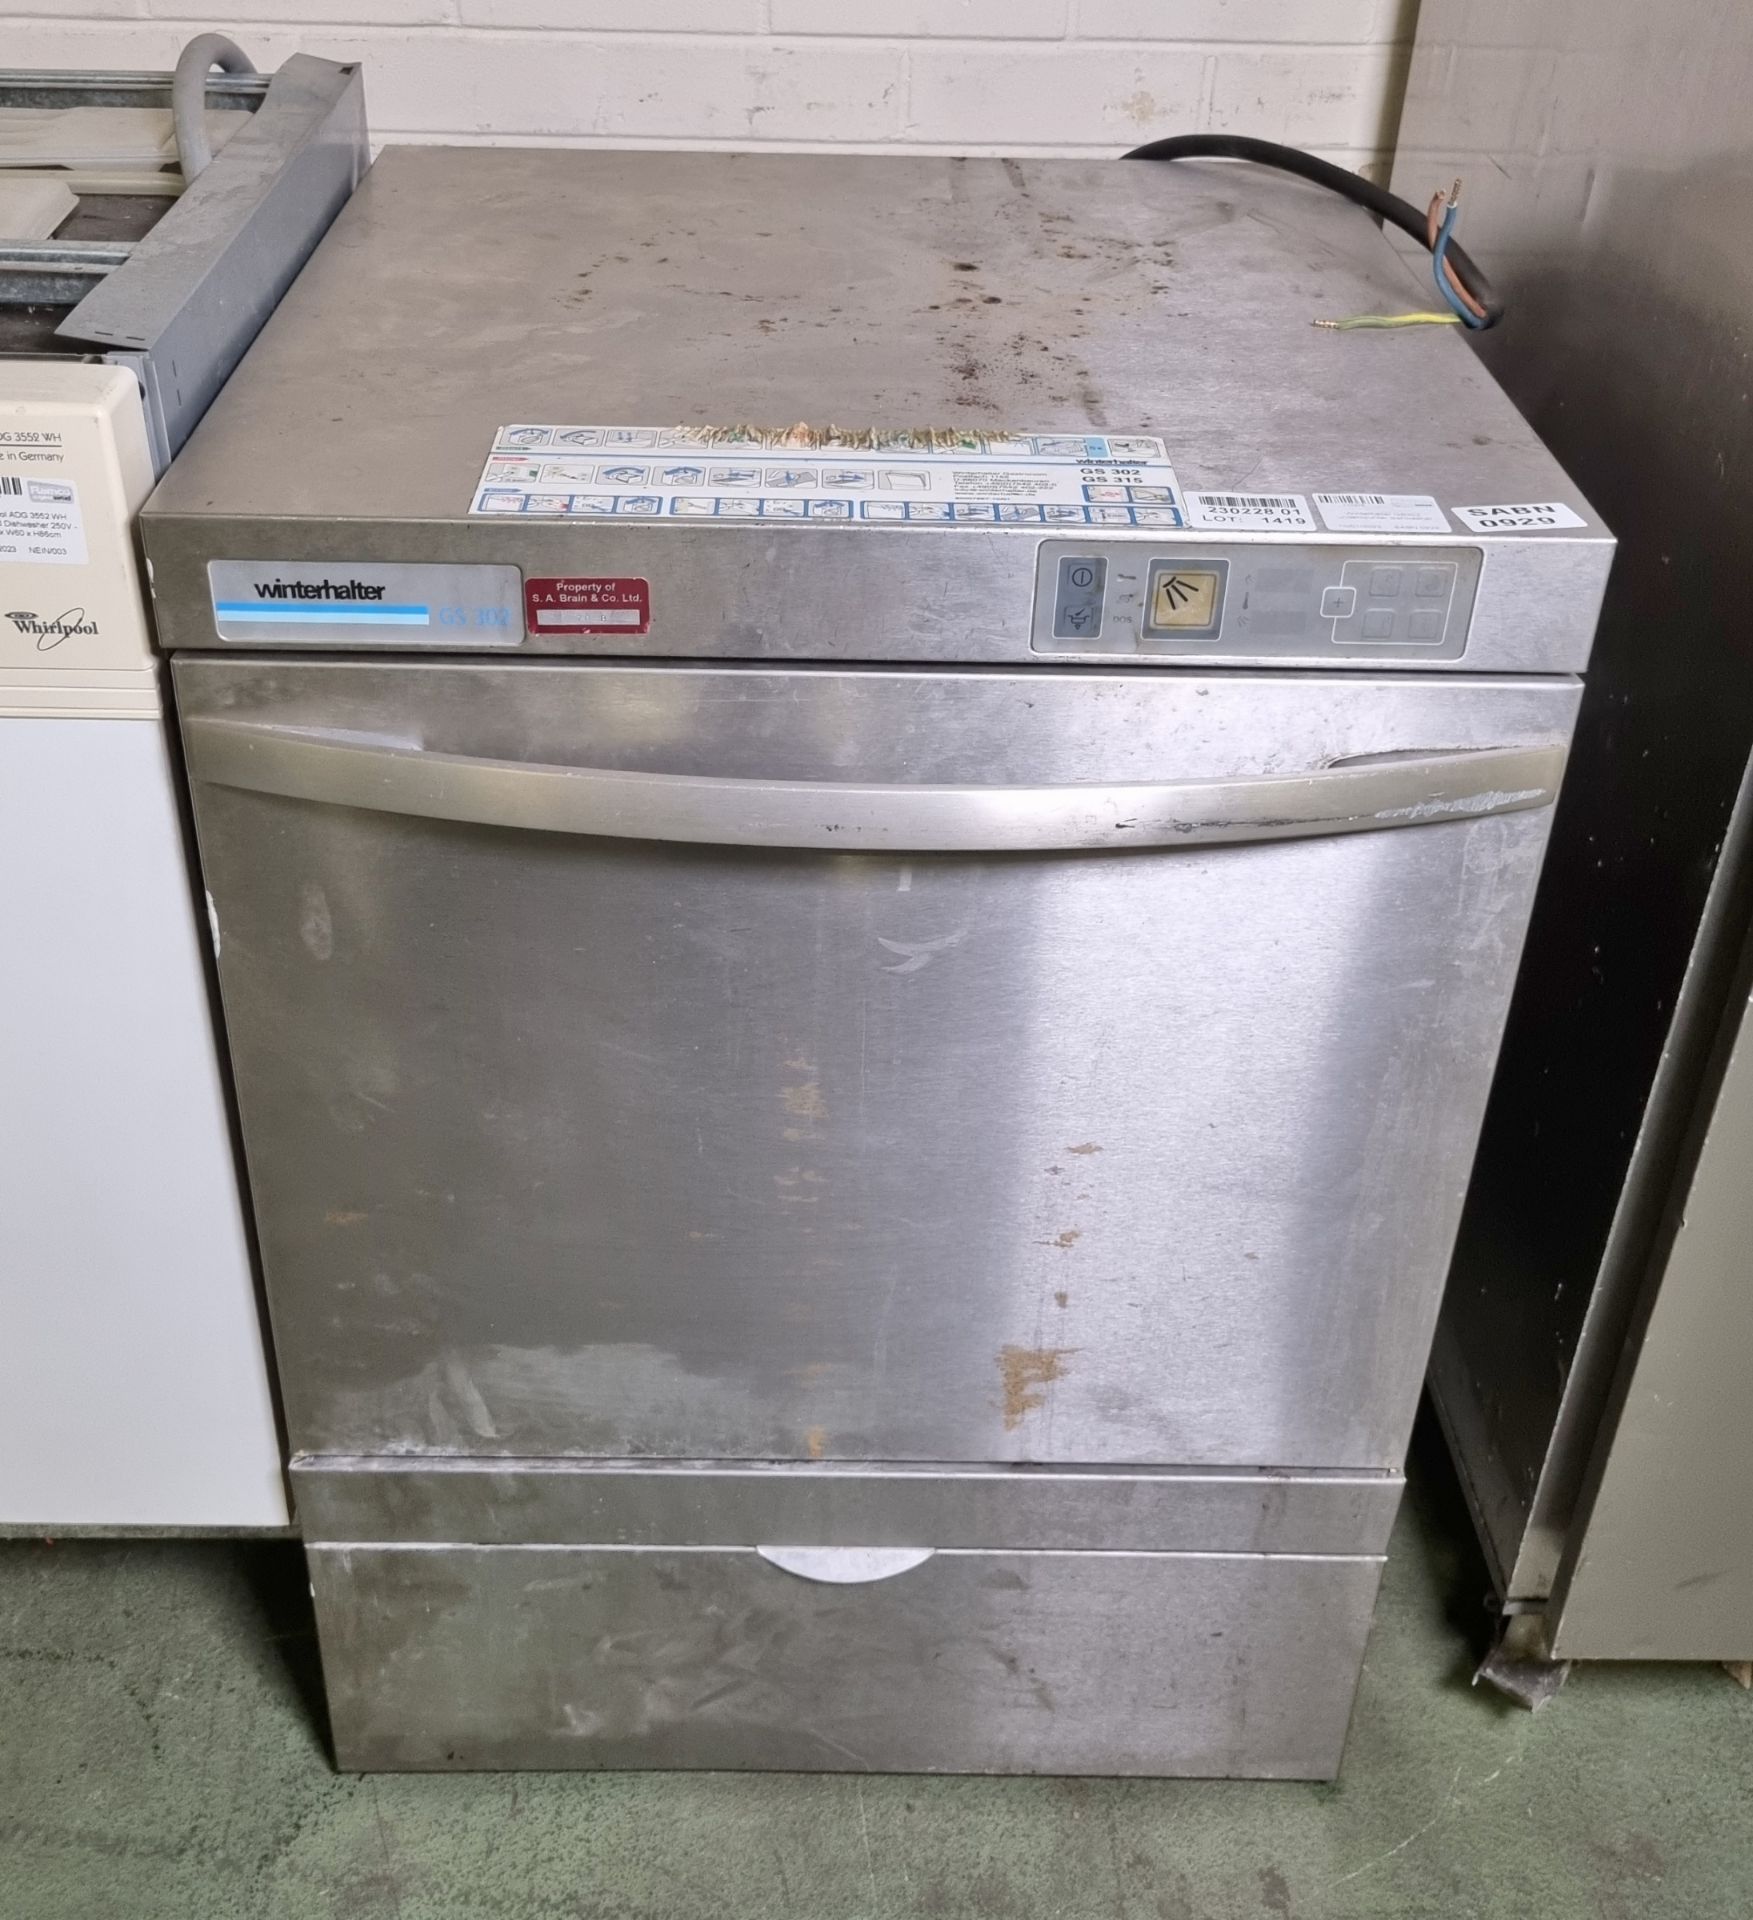 Winterhalter GS302 undercounter dishwasher